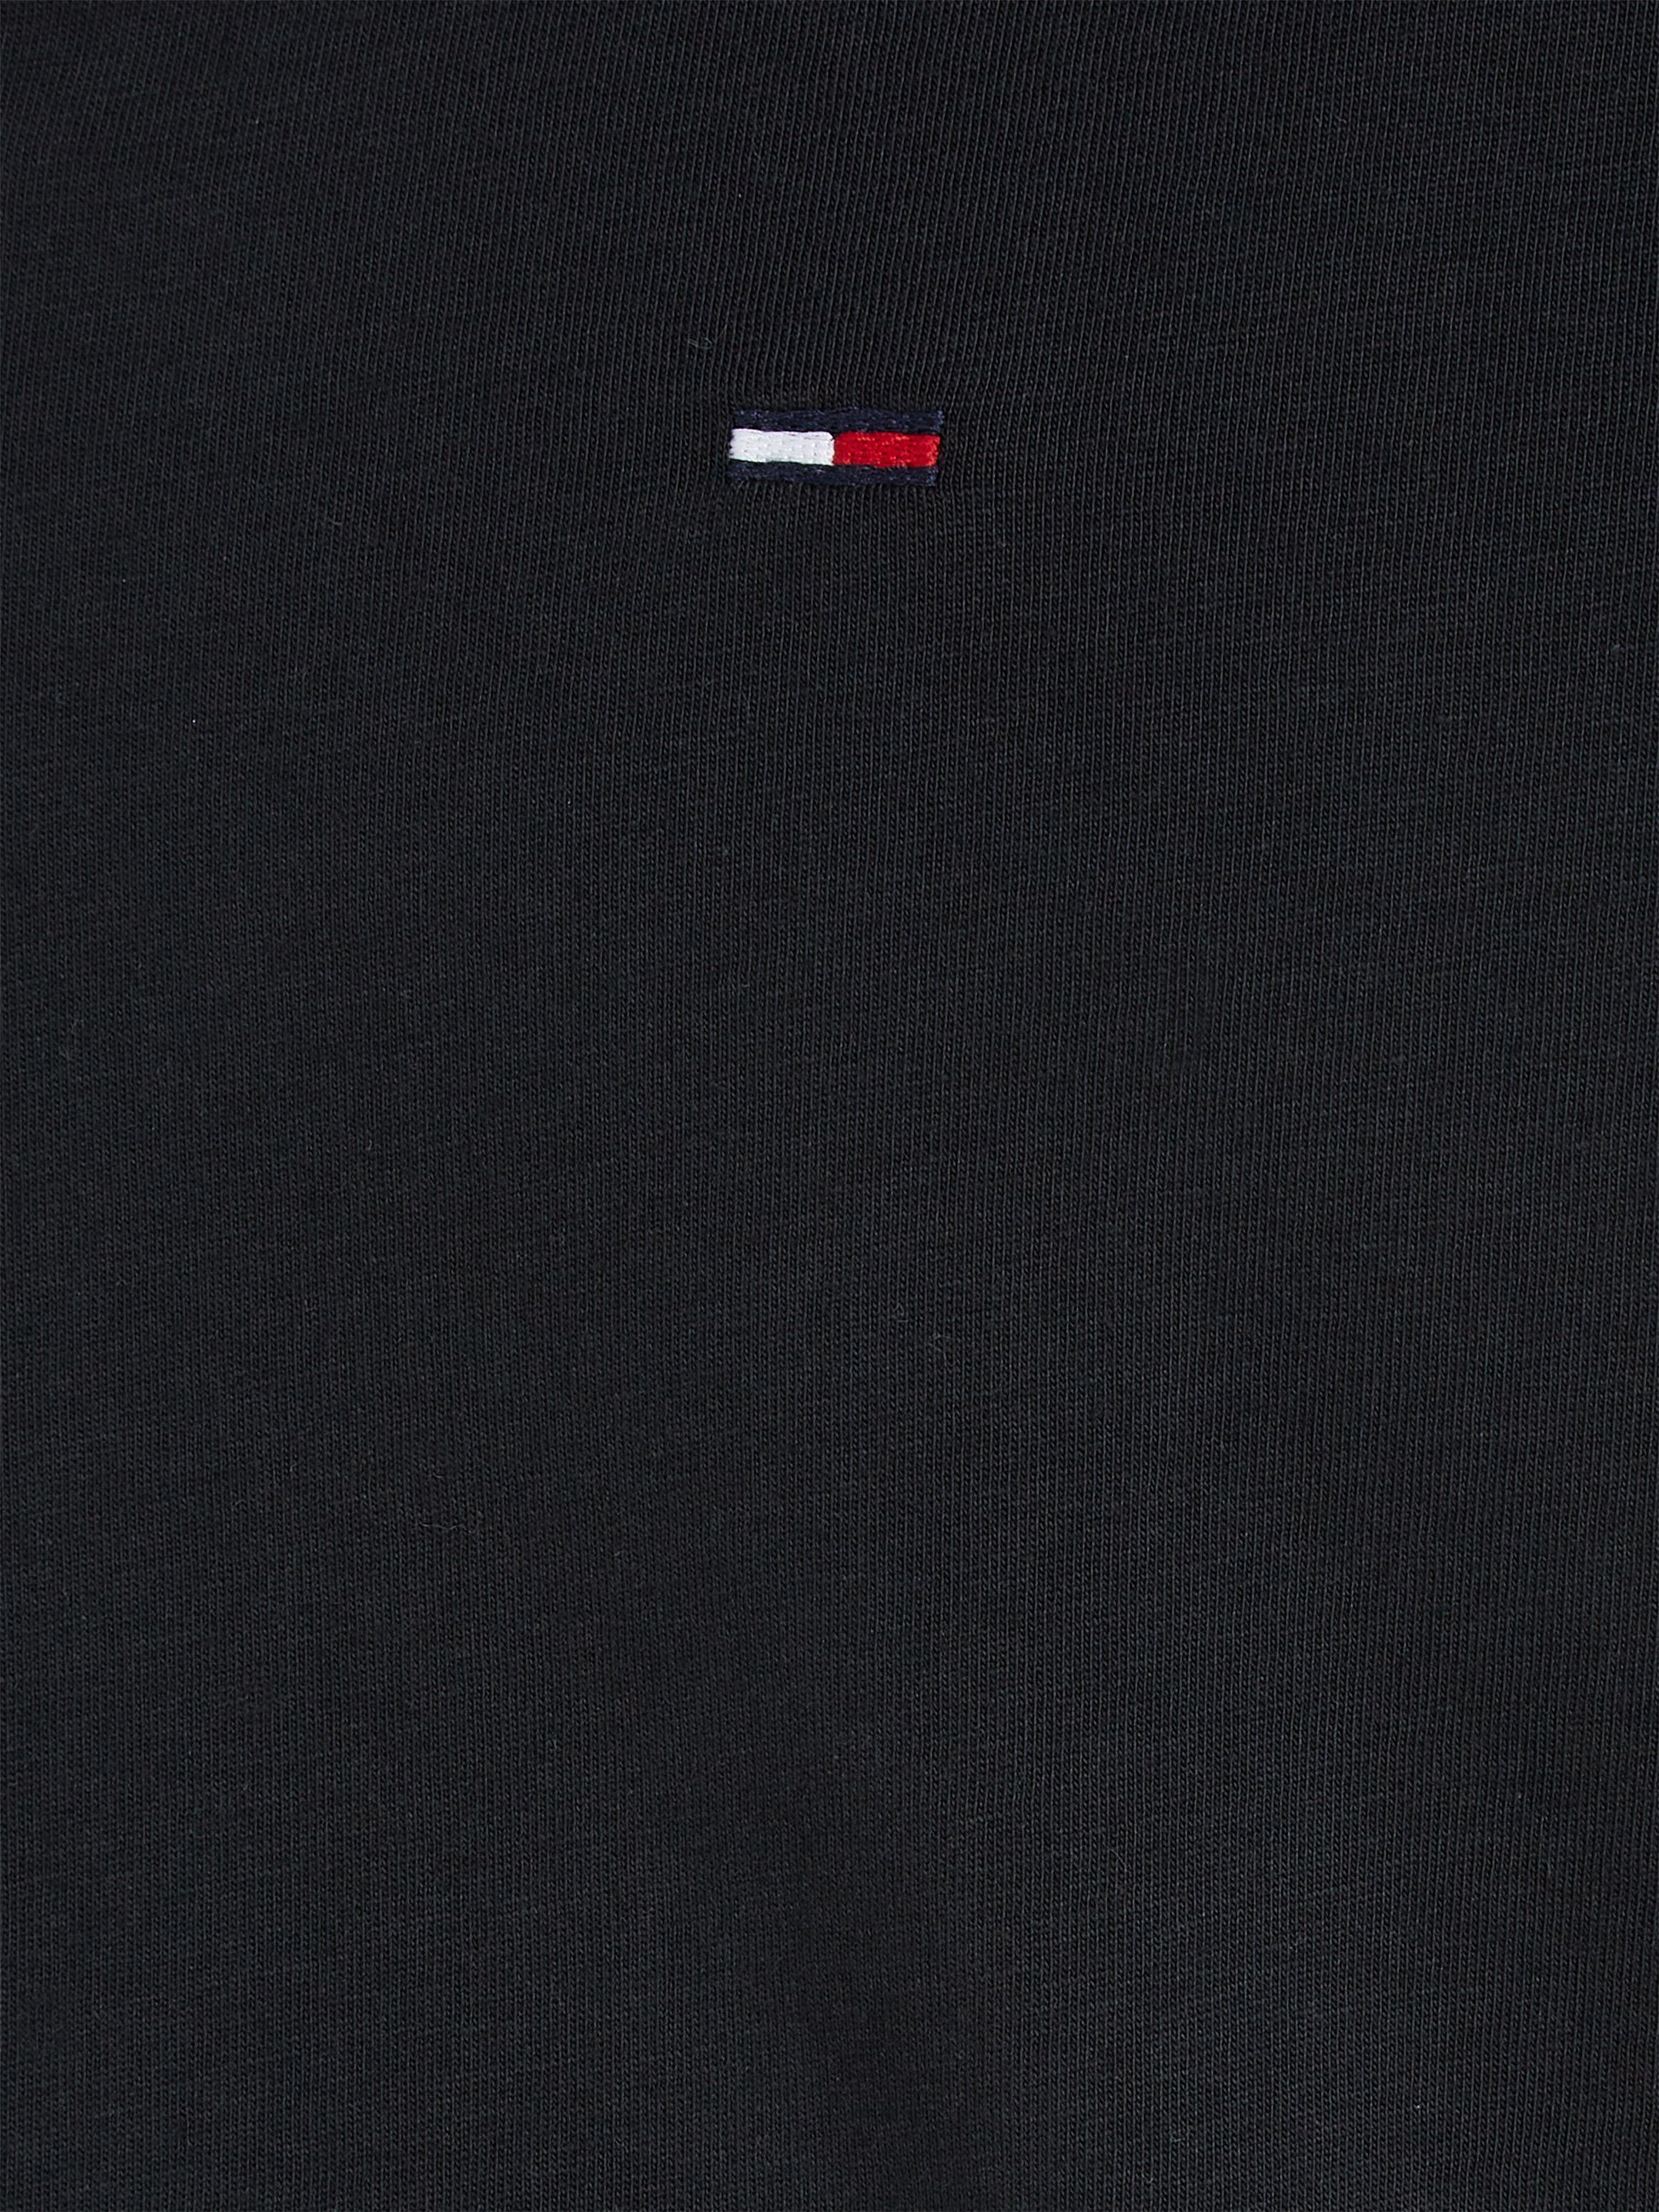 JERSEY Logo-Flag V-Ausschnitt Jeans 078 TJM dezenter Tommy und ORIGINAL black NECK mit tommy T-Shirt V TEE